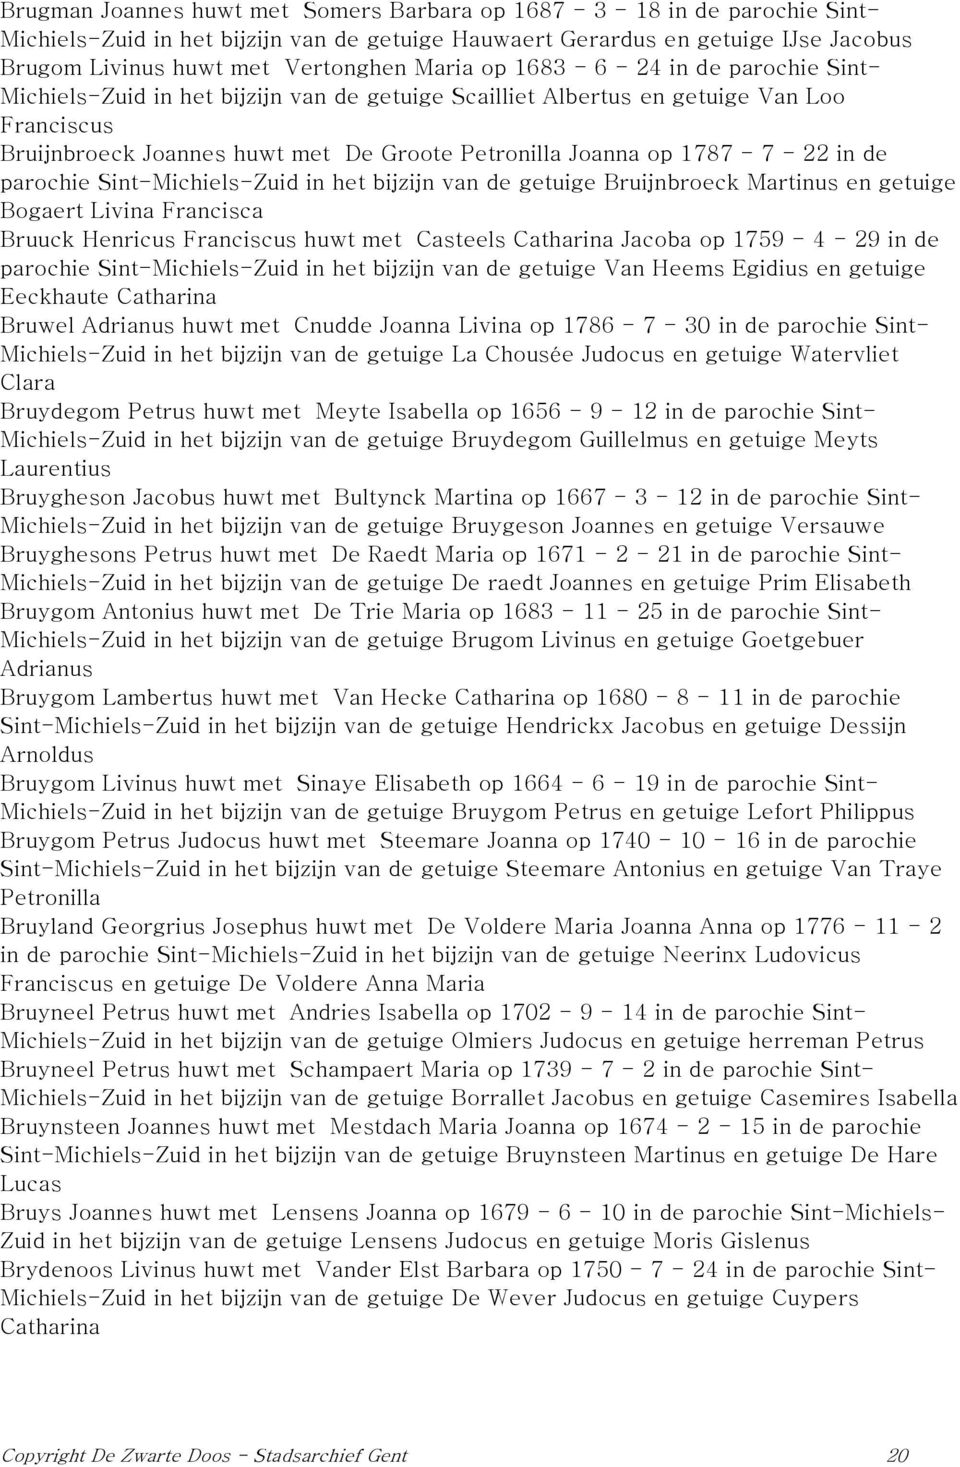 1787-7 - 22 in de parochie Sint-Michiels-Zuid in het bijzijn van de getuige Bruijnbroeck Martinus en getuige Bogaert Livina Francisca Bruuck Henricus Franciscus huwt met Casteels Catharina Jacoba op